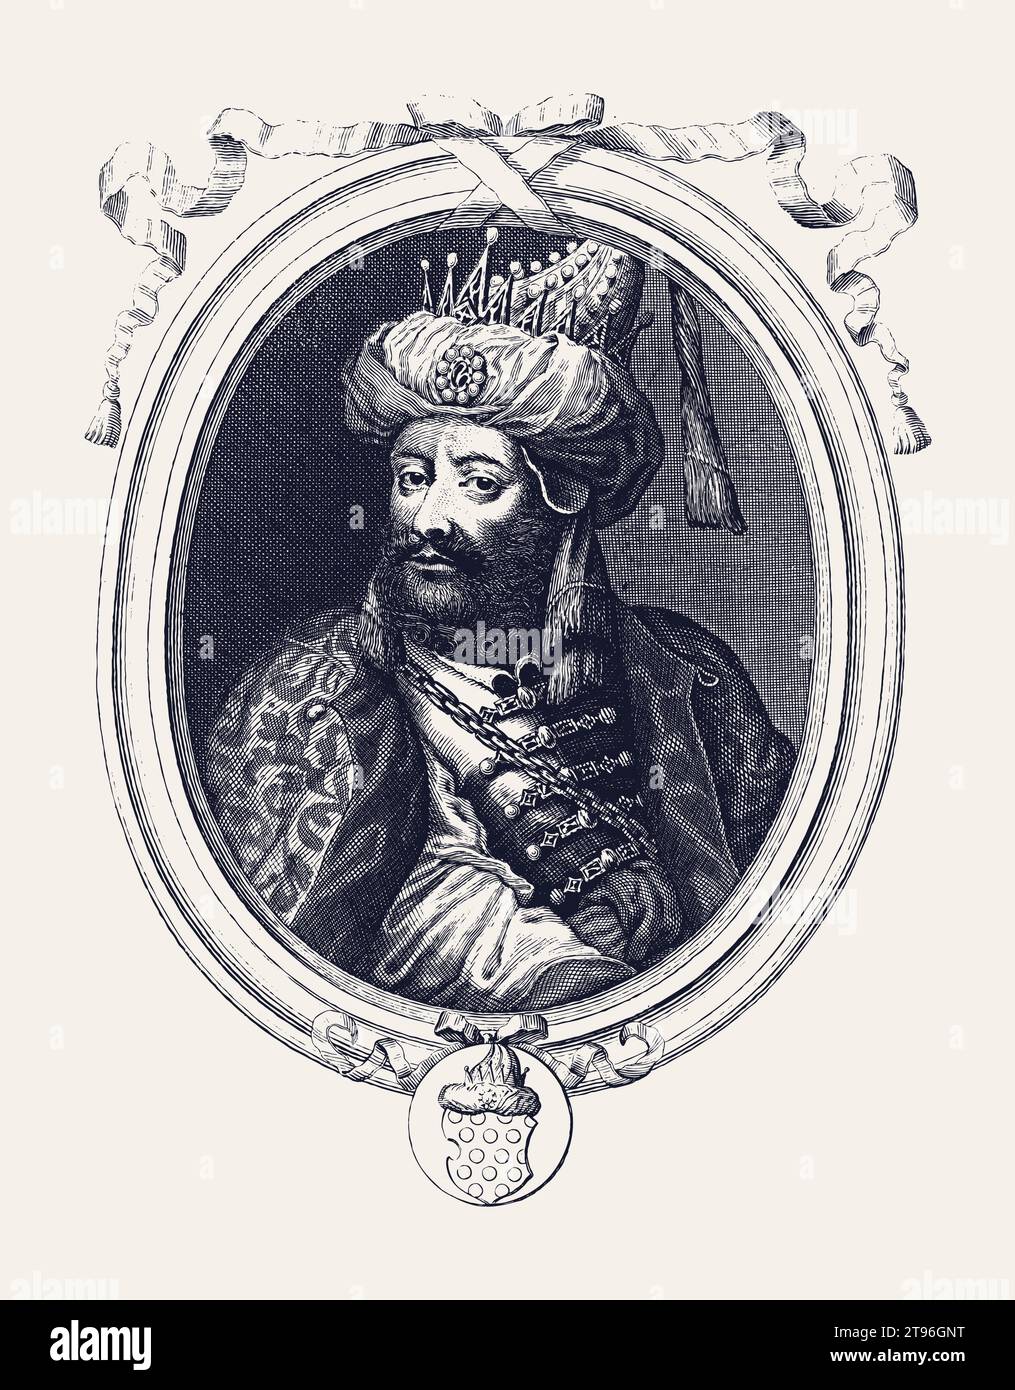 Illustration vectorielle de style gravure vintage d'Aurangzeb Alamgir, le sultan de l'Empire moghol. Illustration de Vecteur